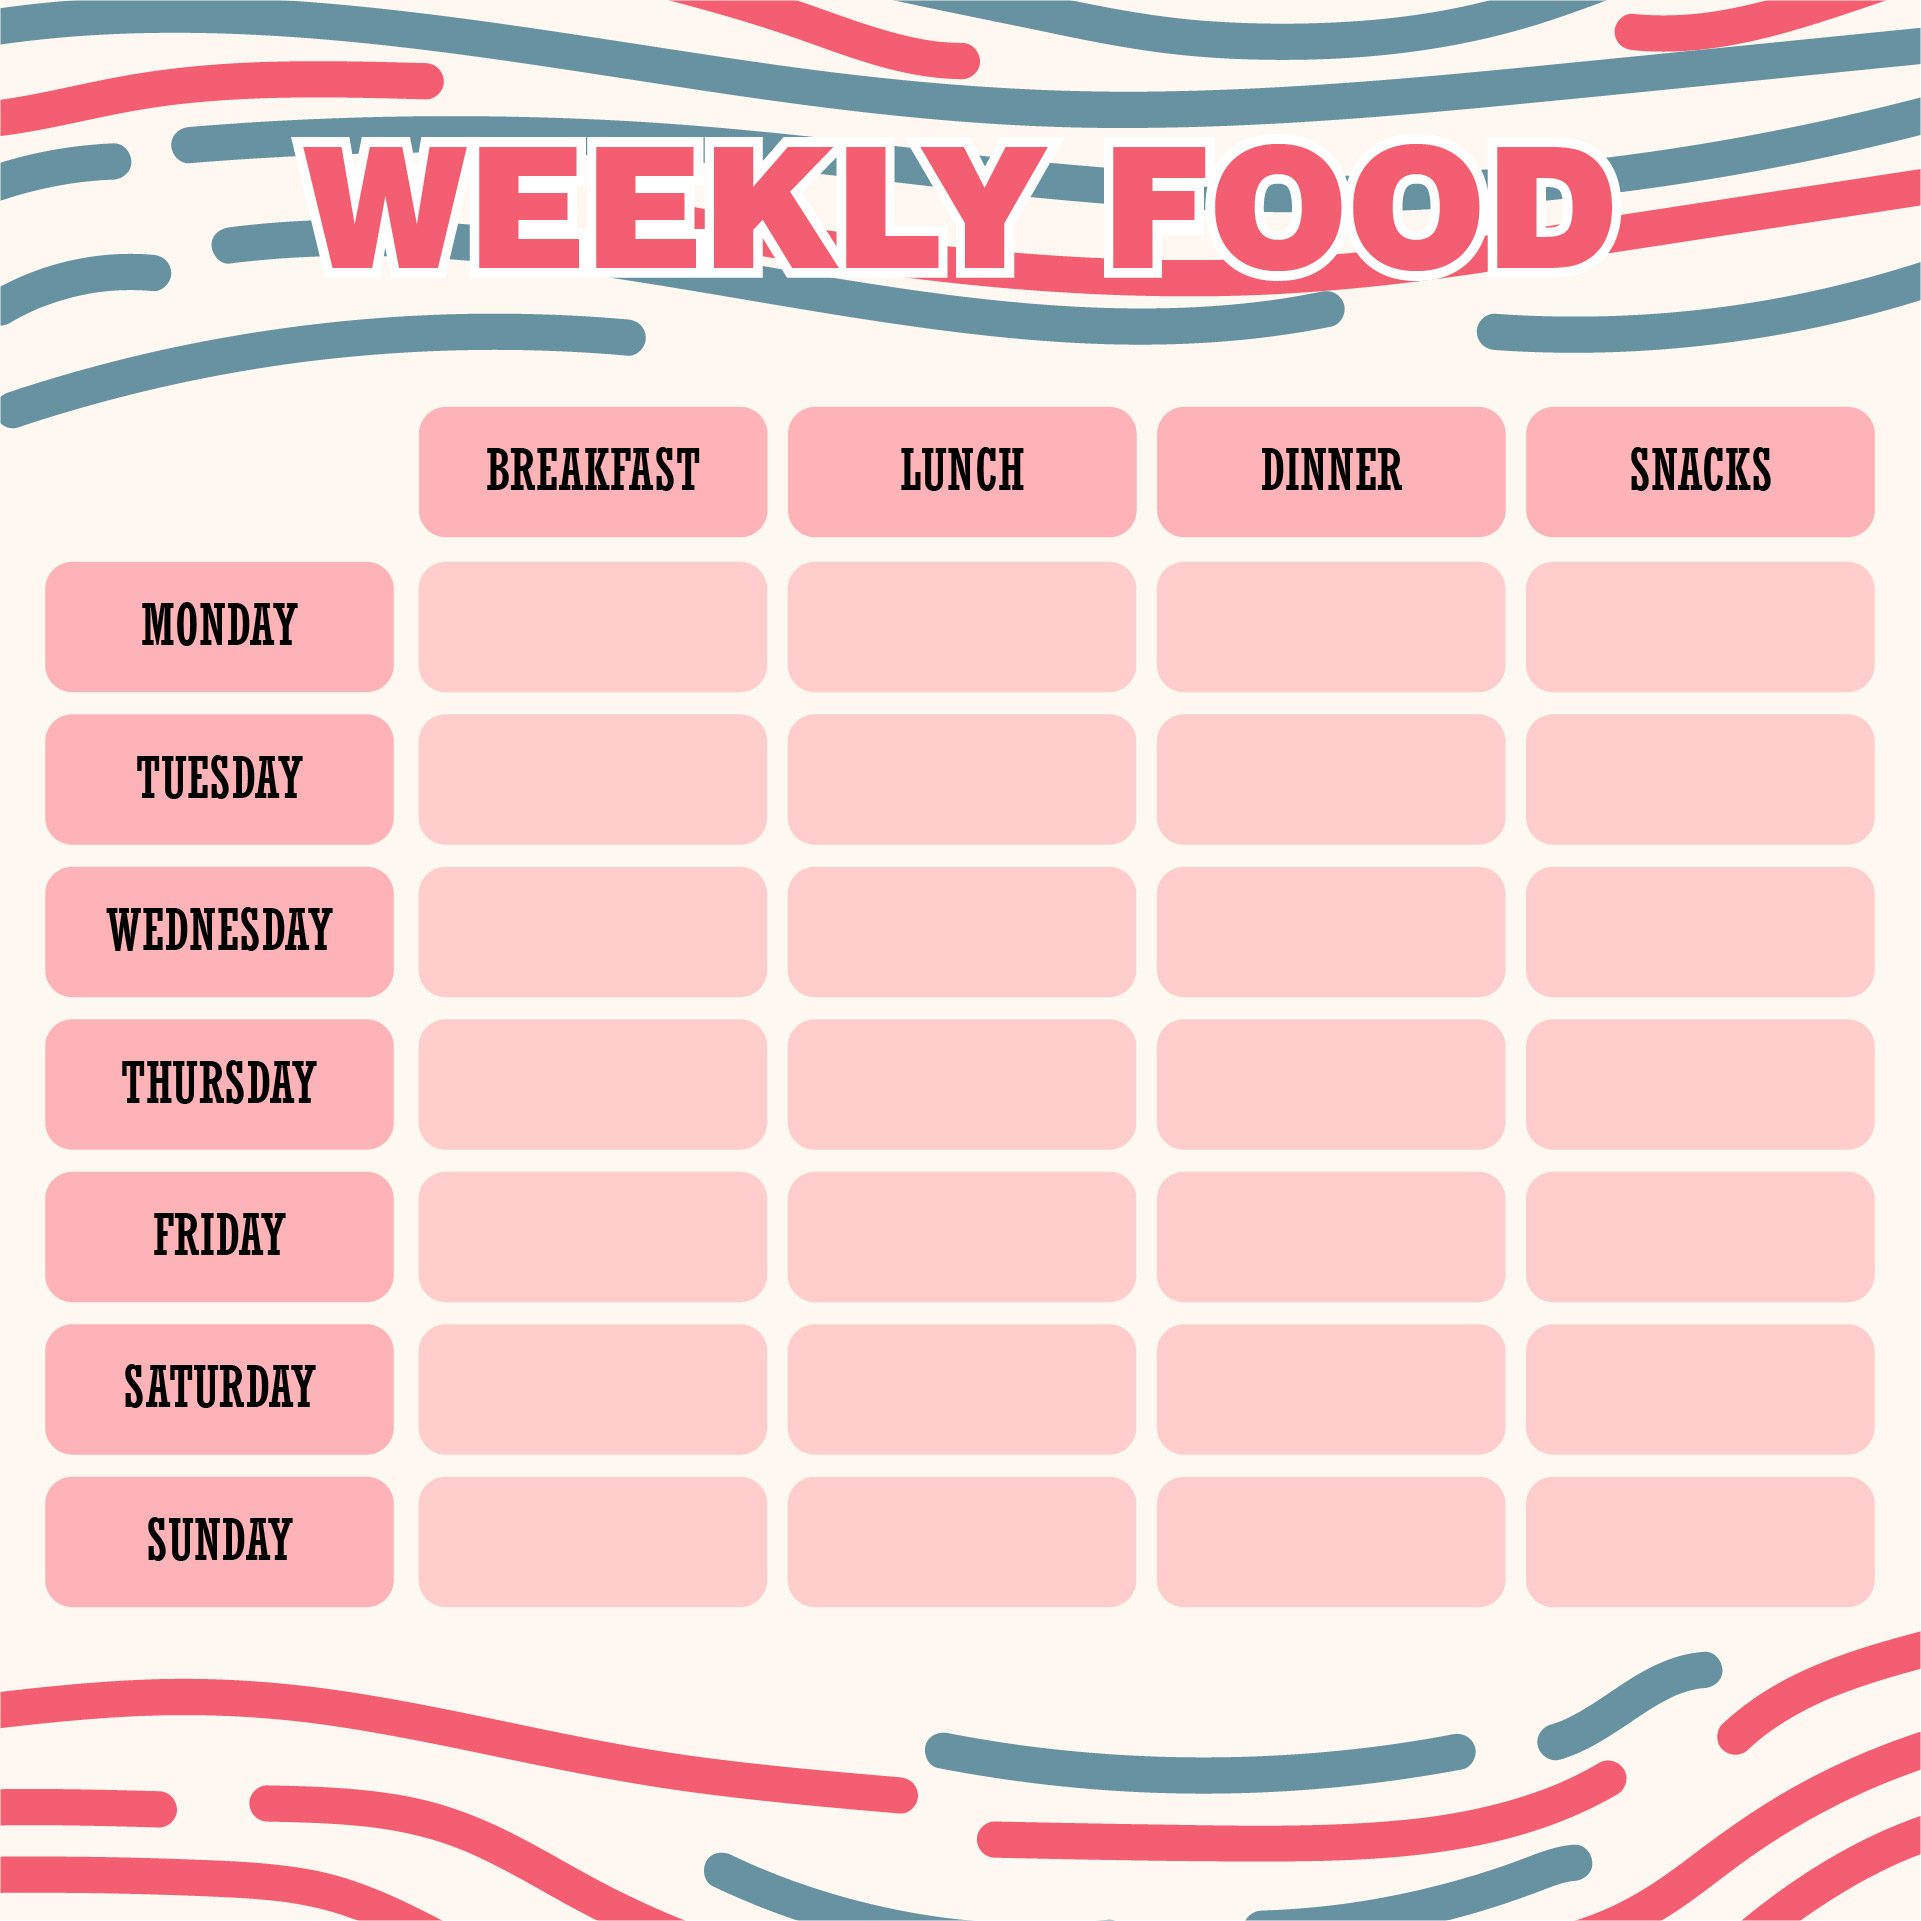 8-best-images-of-printable-weekly-food-log-journal-printable-weekly-food-diary-weekly-food